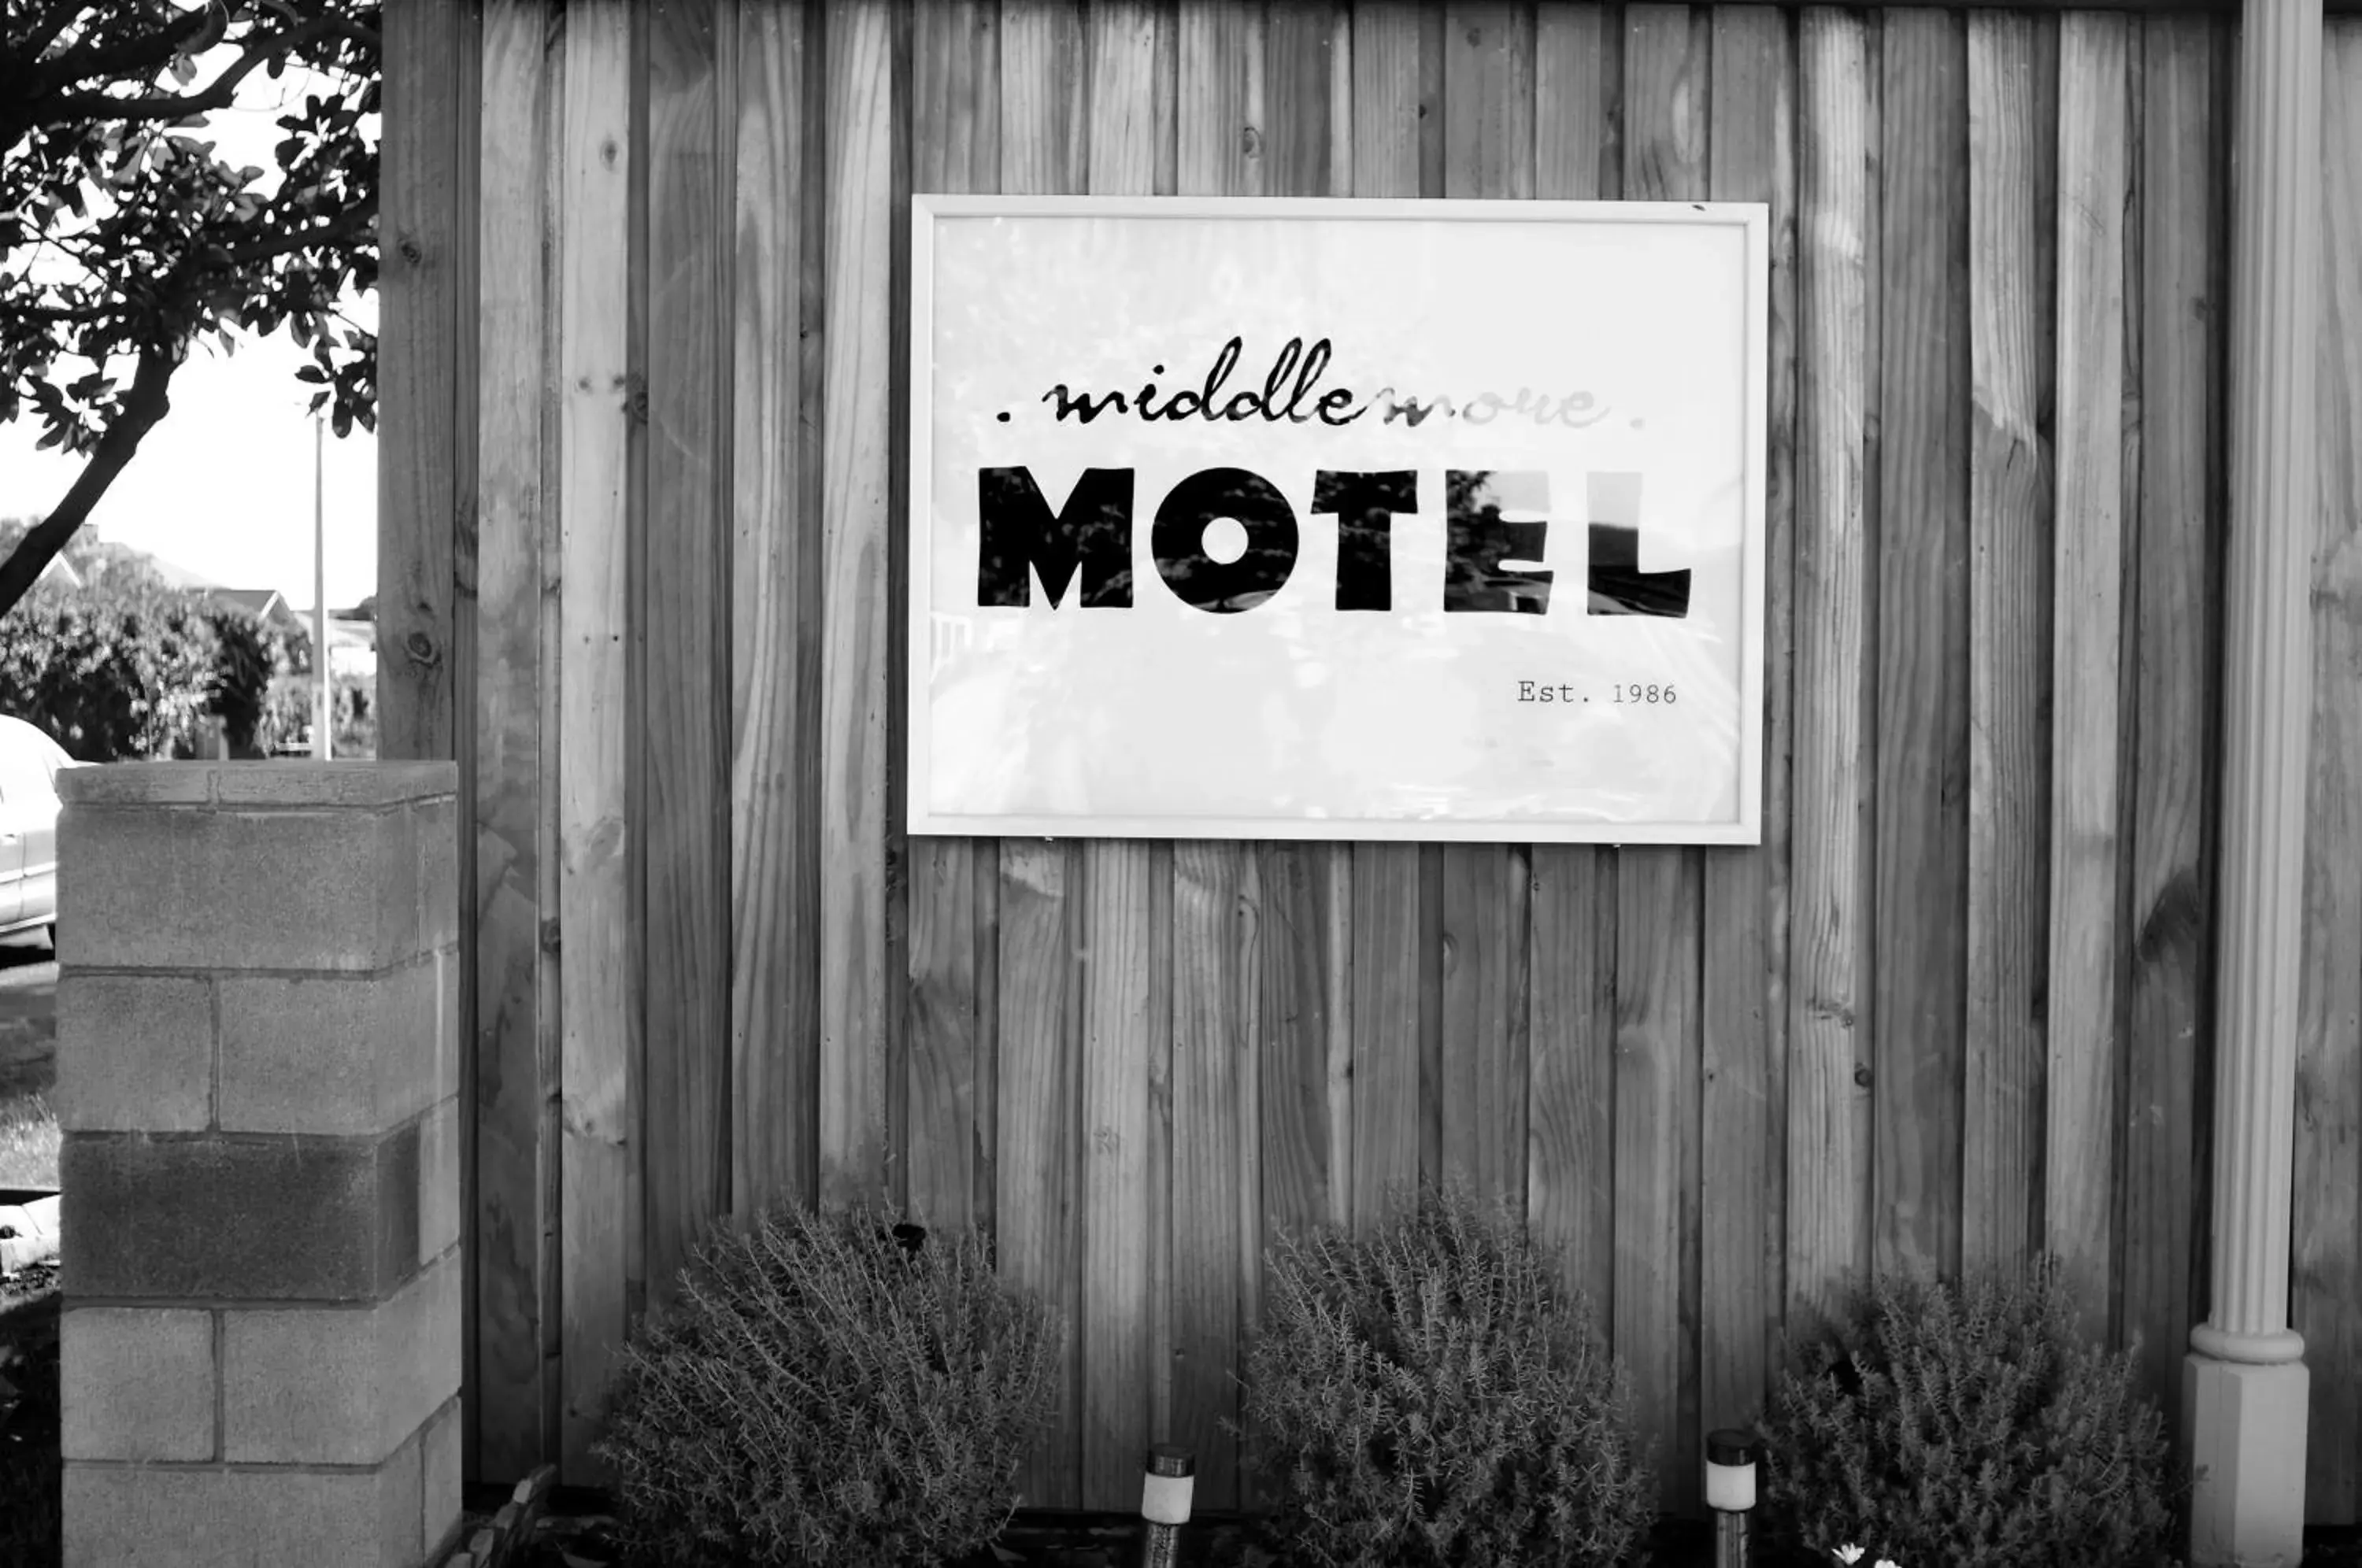 Property logo or sign in Middlemore Motel